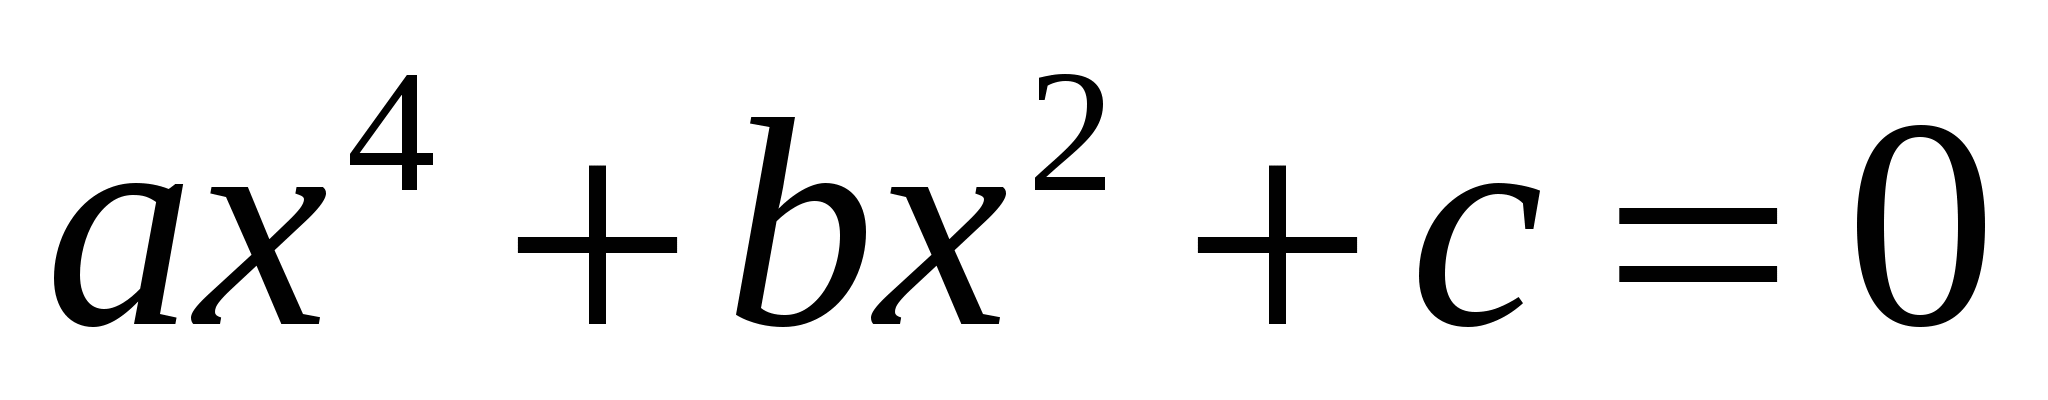 Урок по теме Решение задач с помощью квадратных уравнений(8 класс)